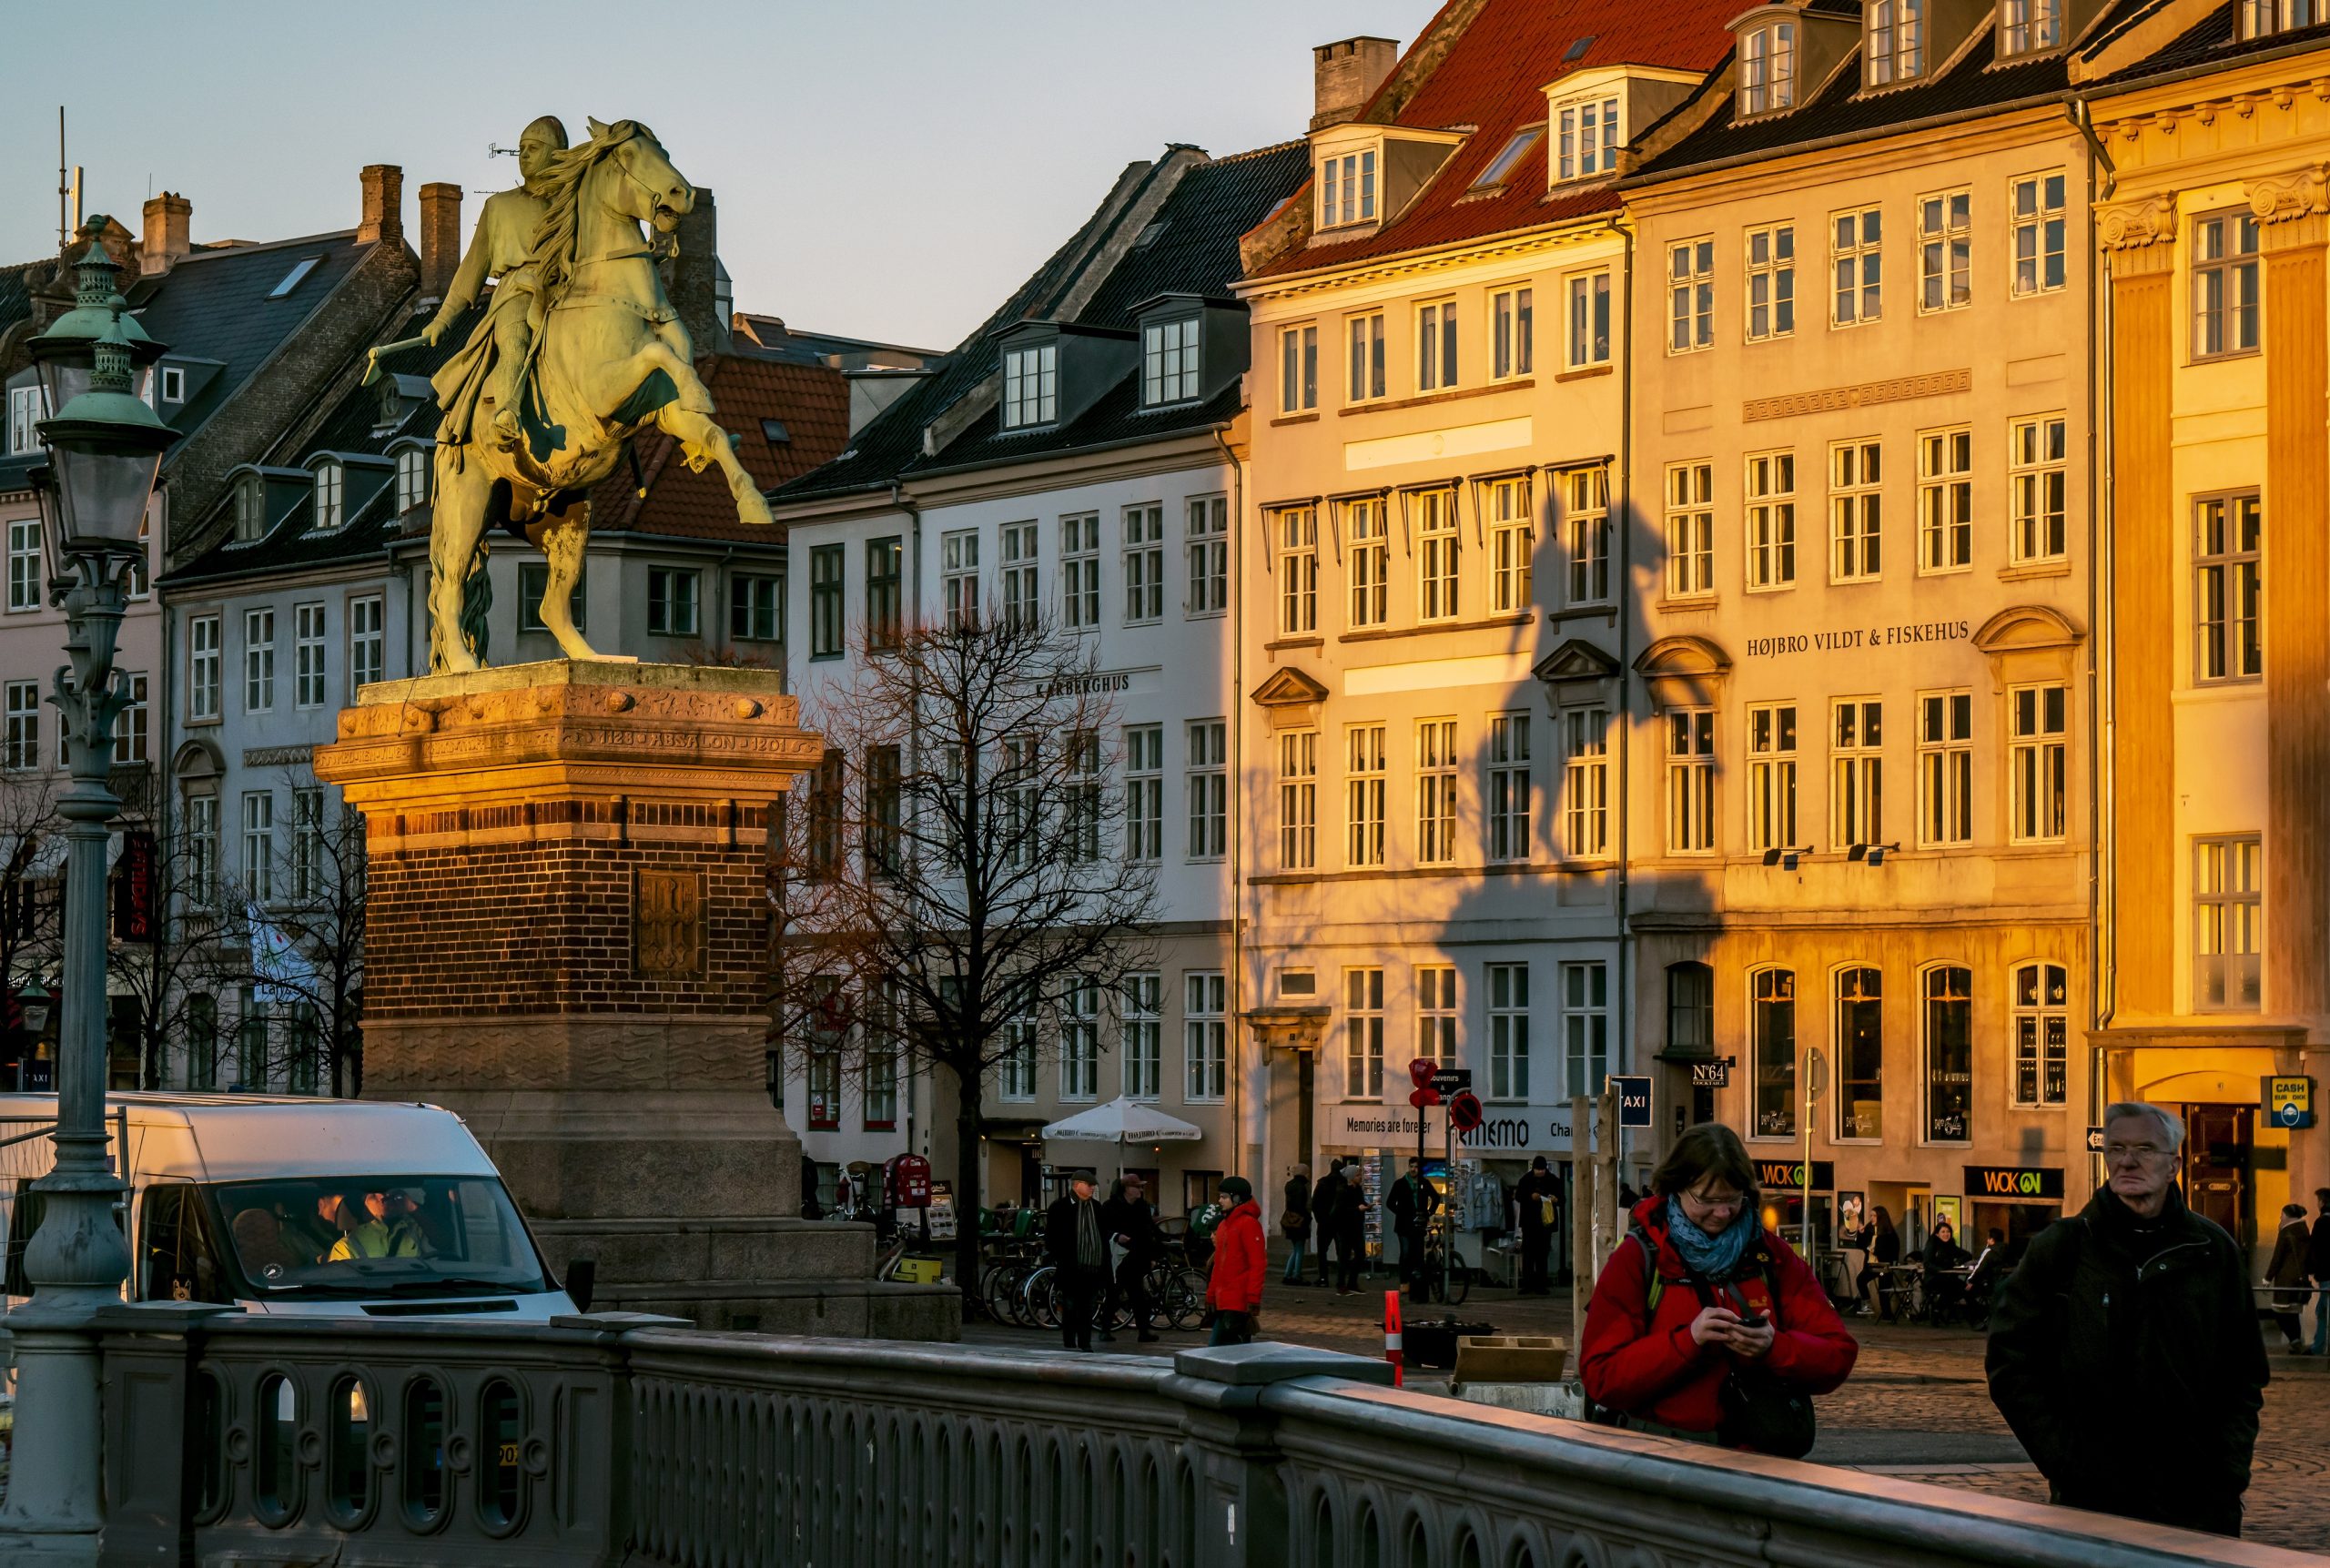 Het centrum van Kopenhagen op een zonnige winterdag. Foto: EPA/Srdjan Suki